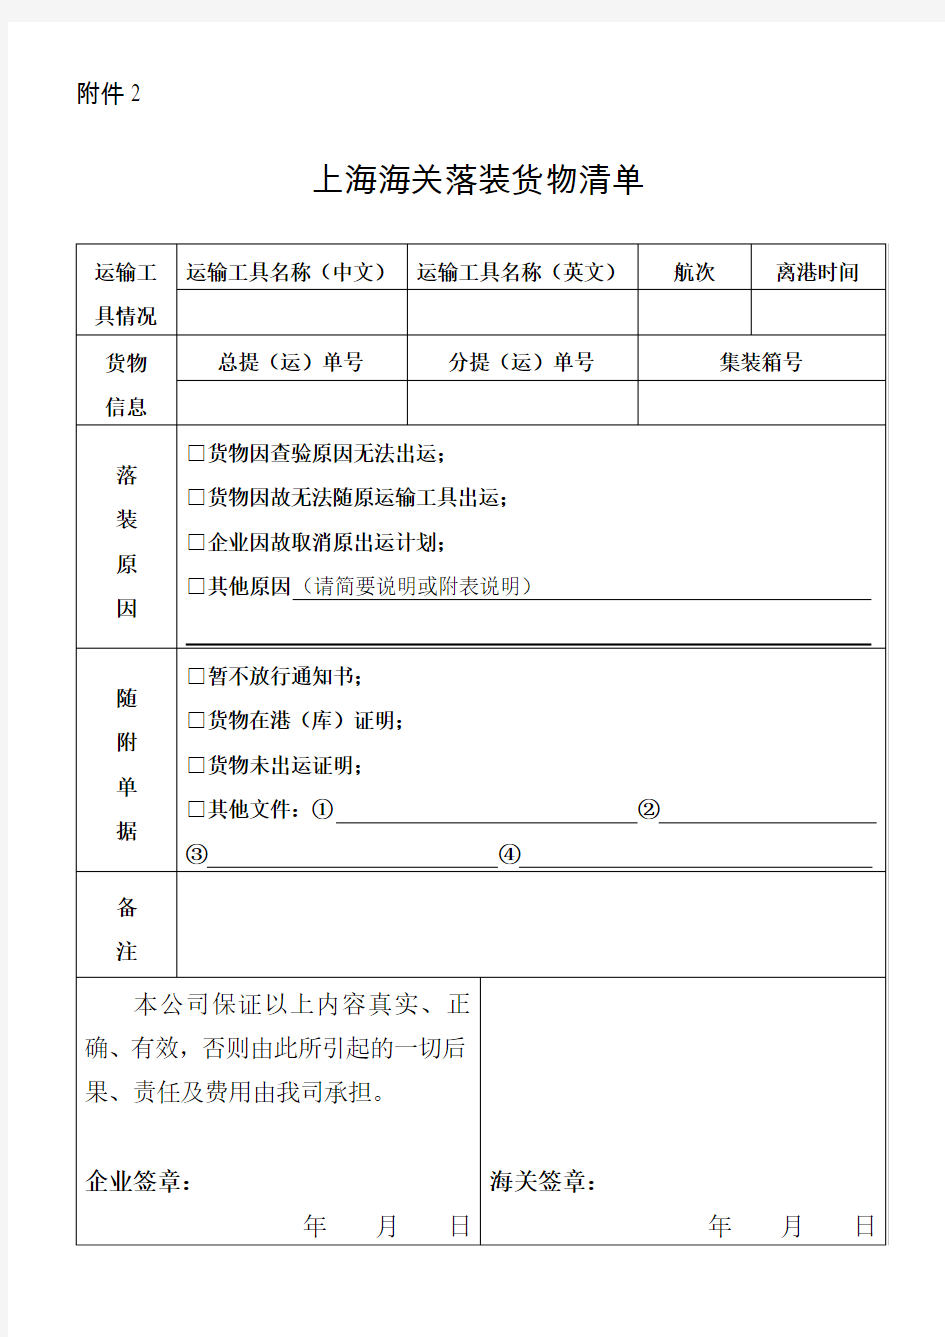 海关电子放行信息查询确认单-上海海关